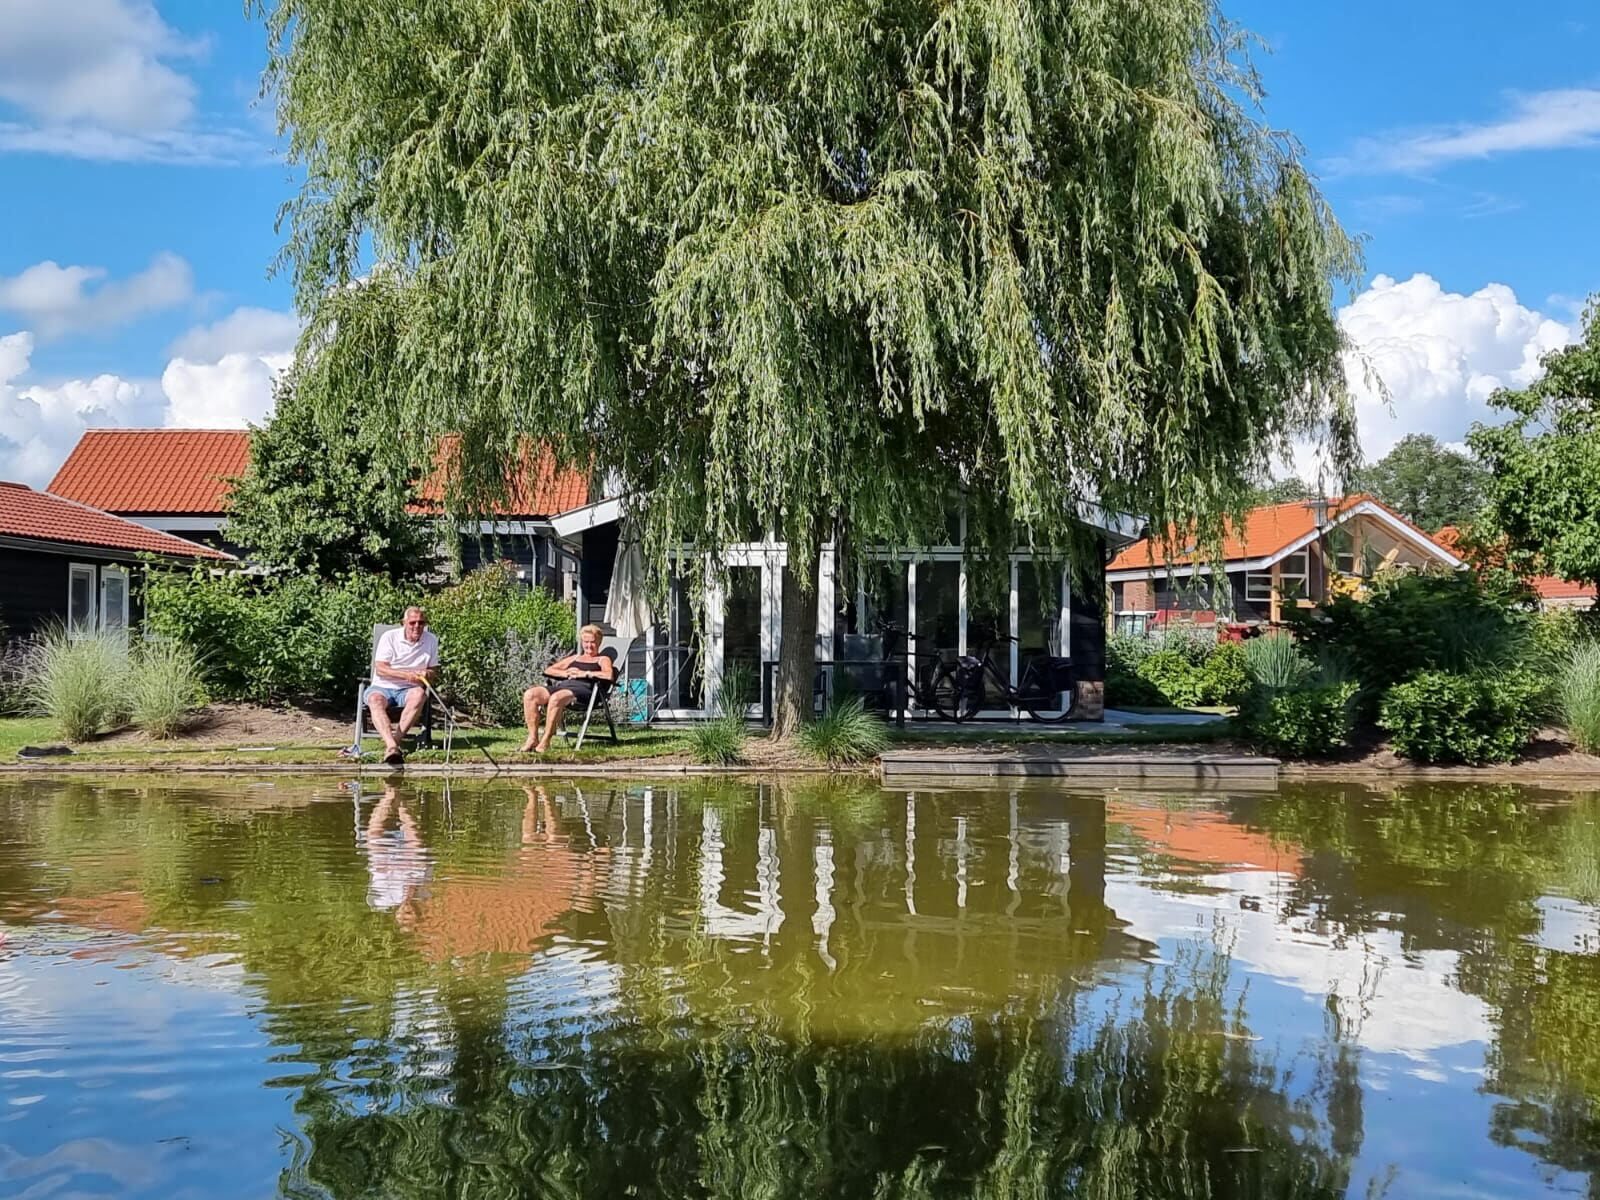 Kauf einer Ferienwohnung in den Niederlanden